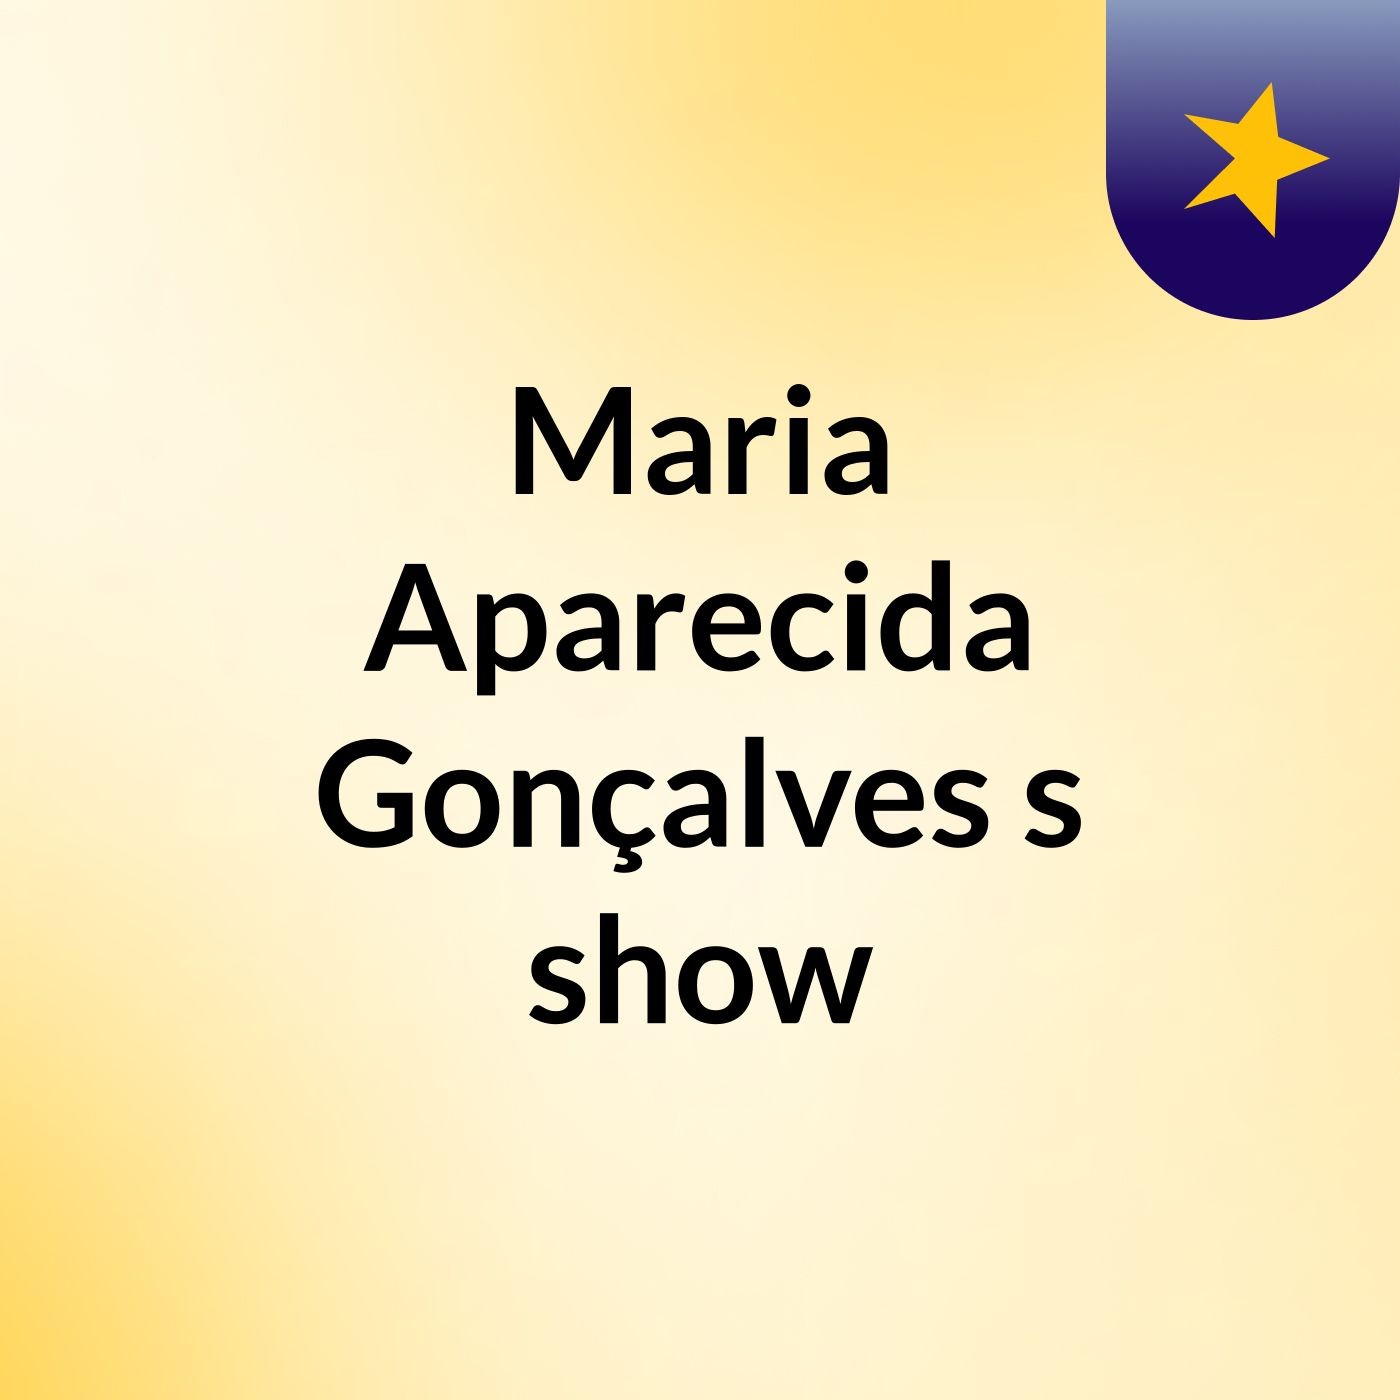 Maria Aparecida Gonçalves's show